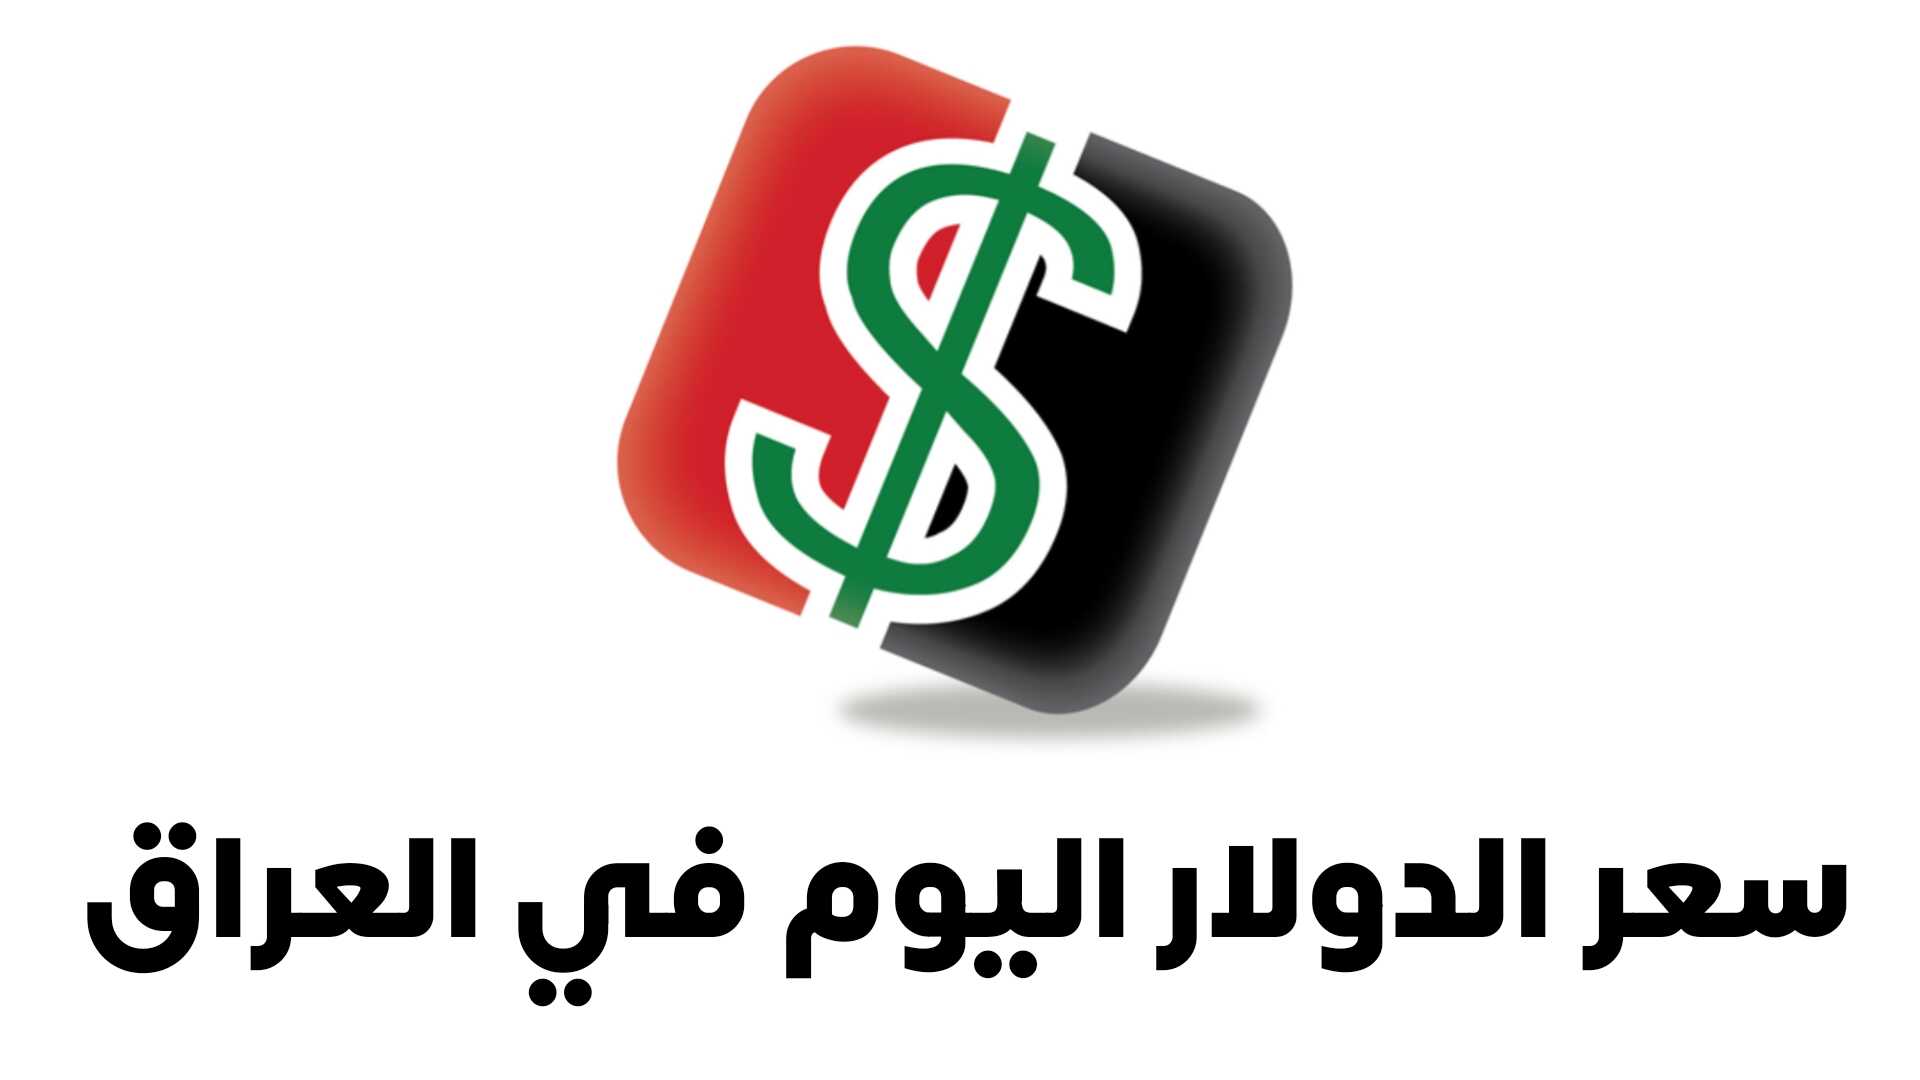 سعر الدولار اليوم في العراق تطبيق البورصة العراقية